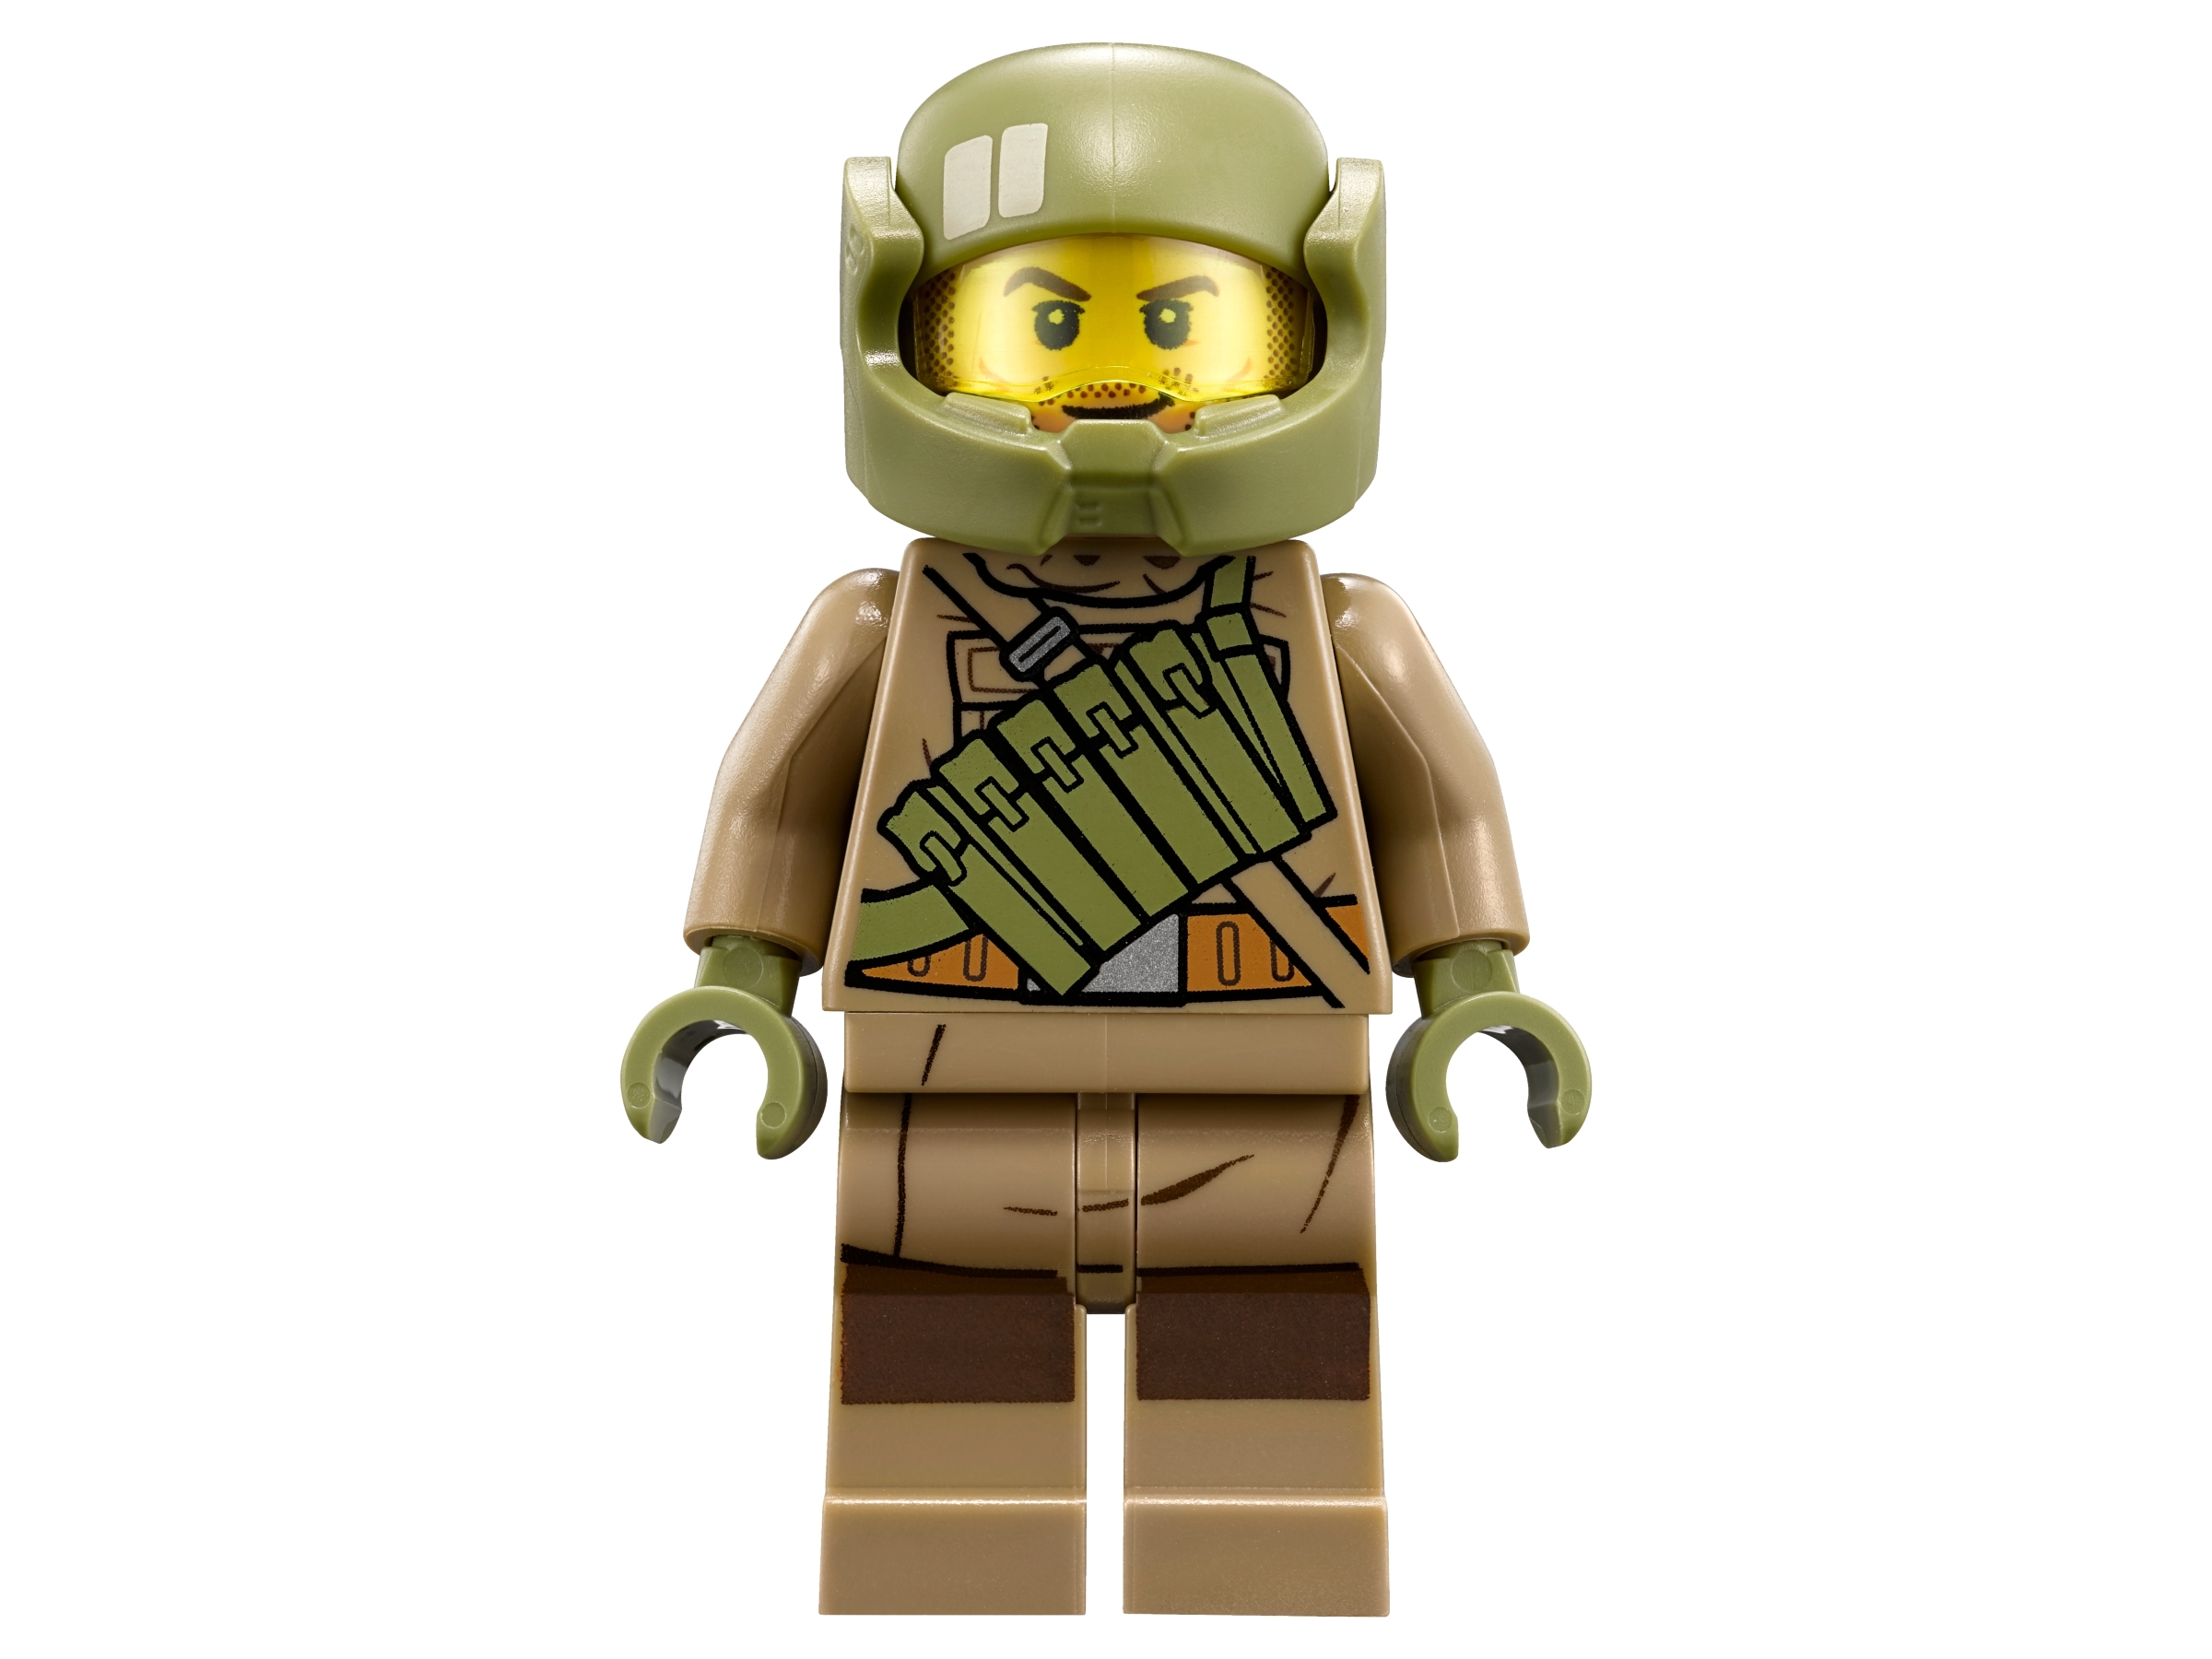 Lego Star wars figura # capitán Poe Dameron de set 75202 nuevo-New # = top!!! 